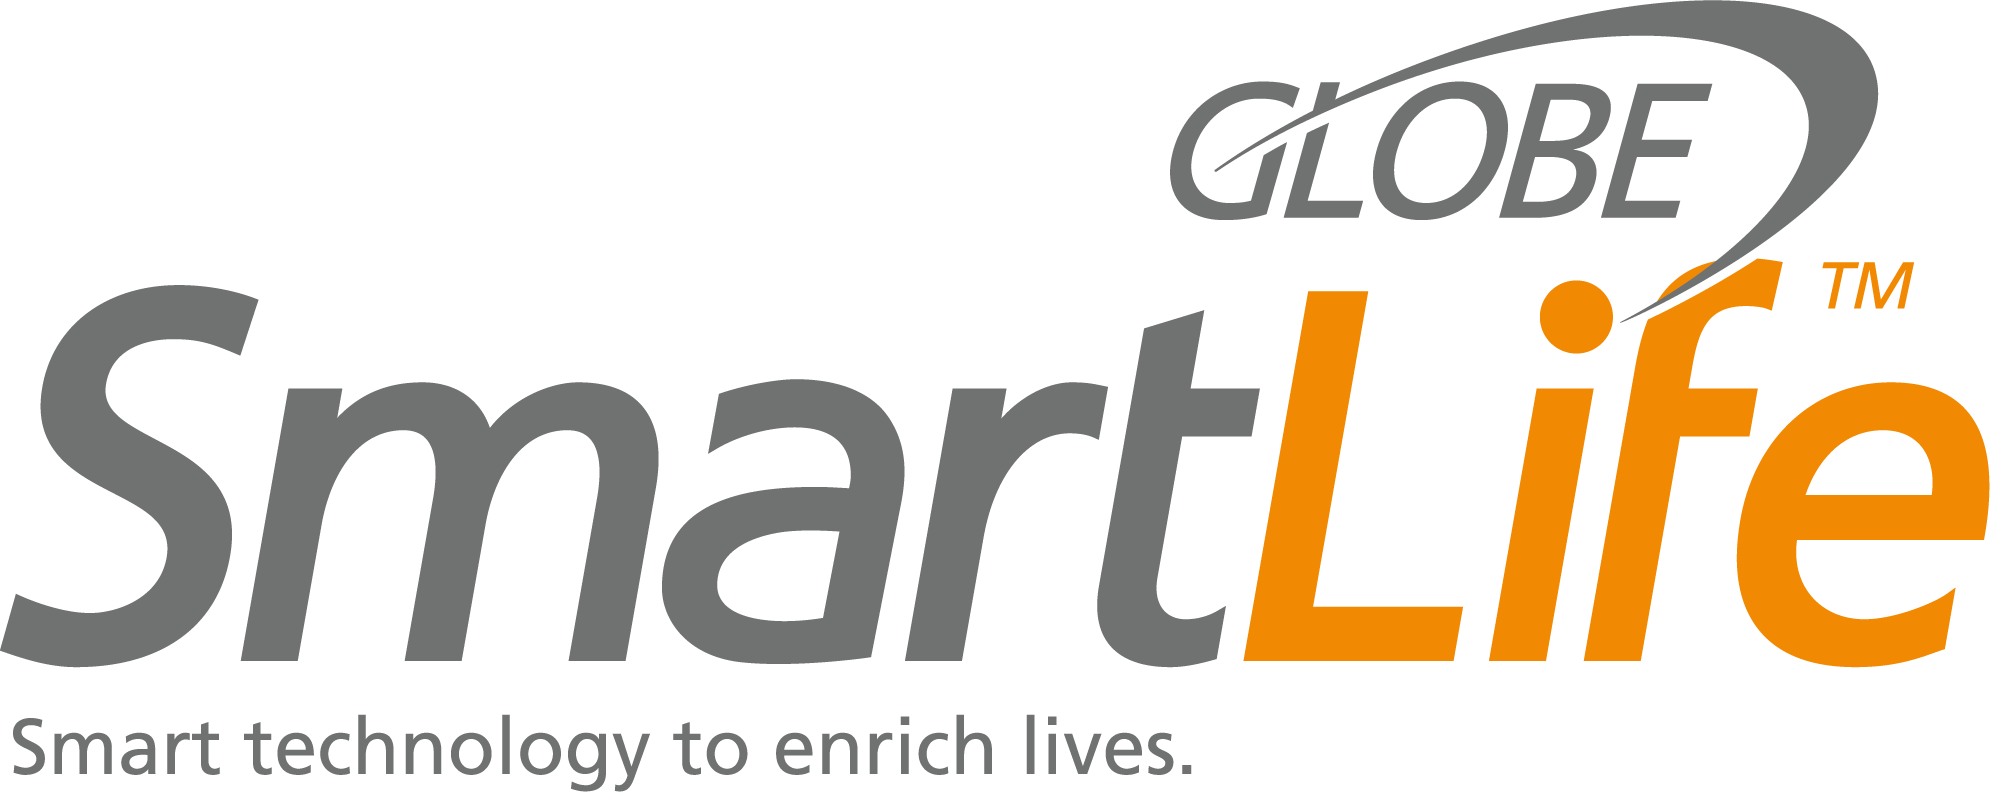 Globe SmartLife